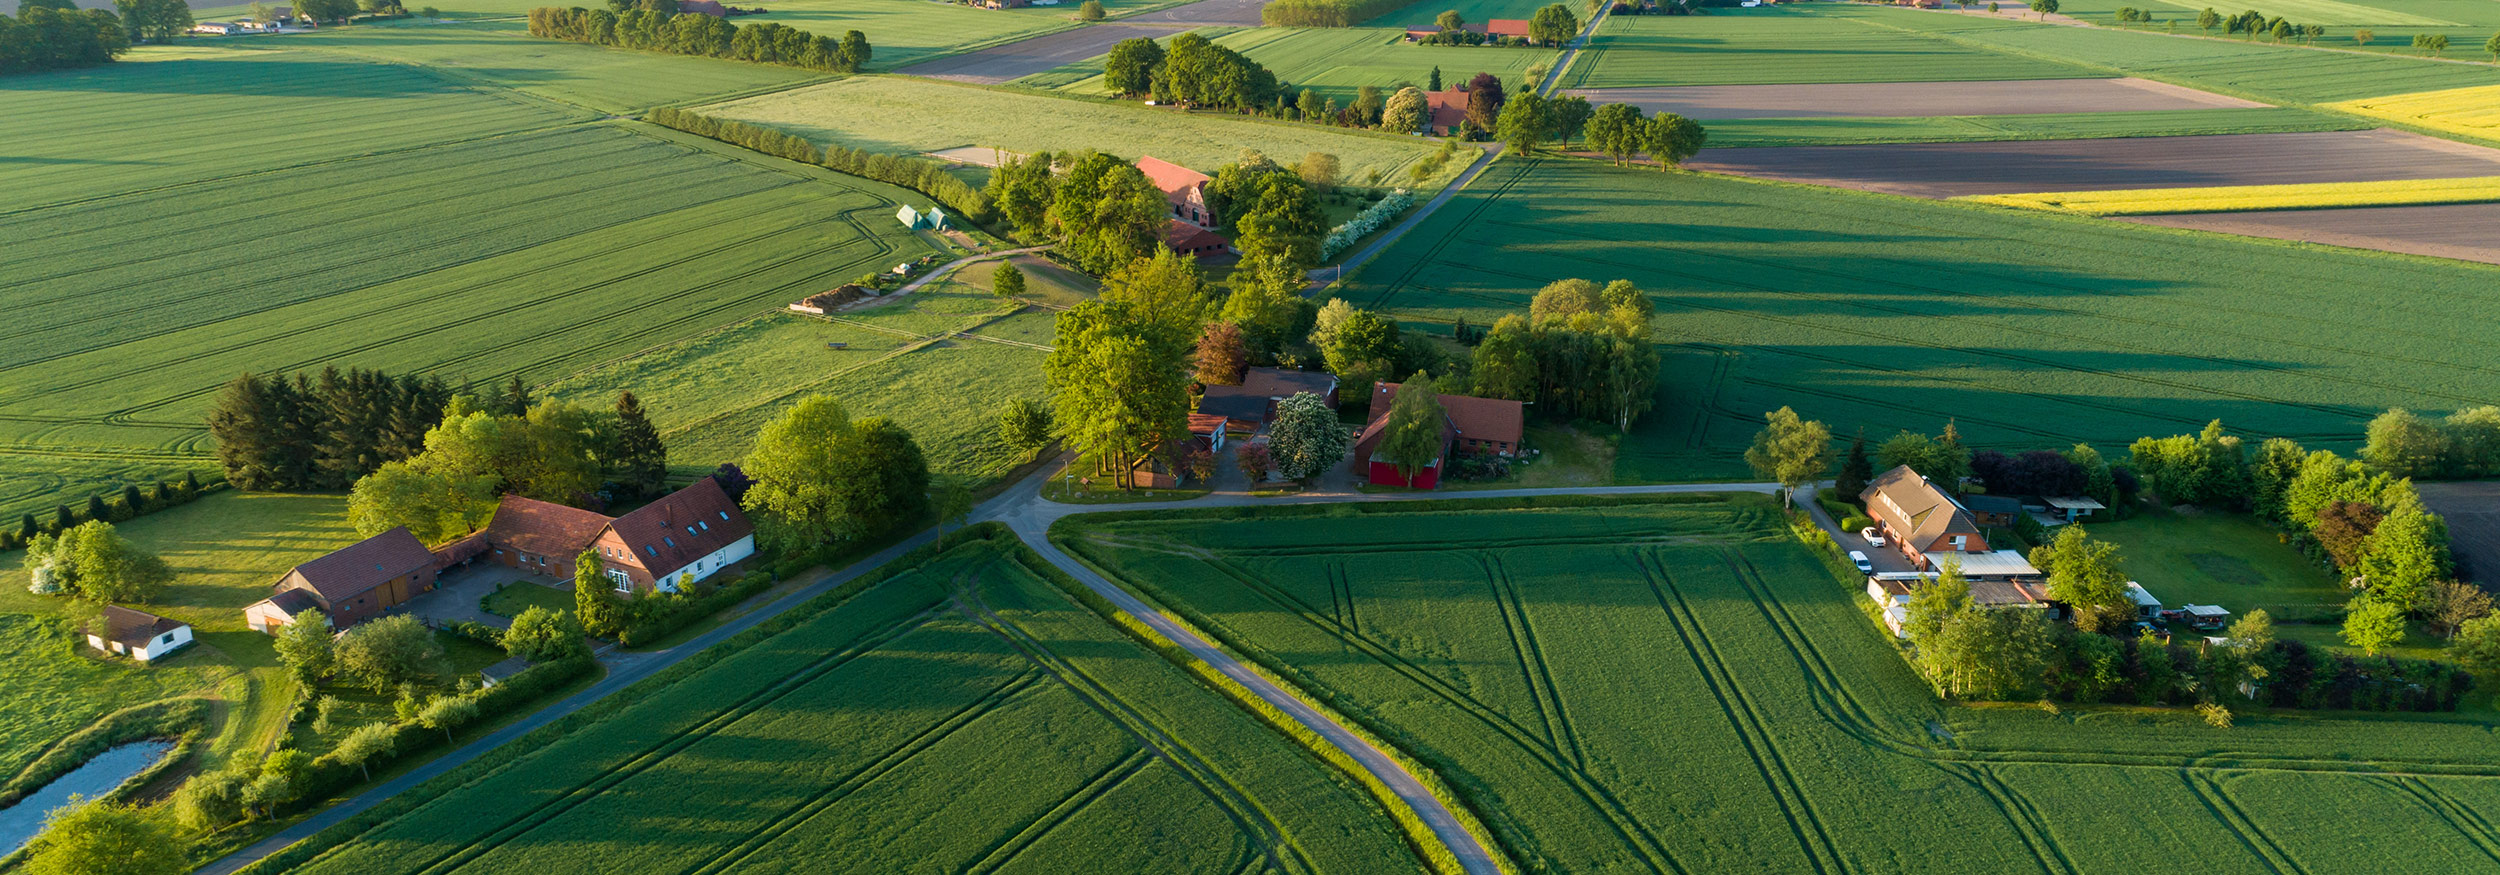 Luftbild mehrere Häuser und Felder im ländlichem Gebiet